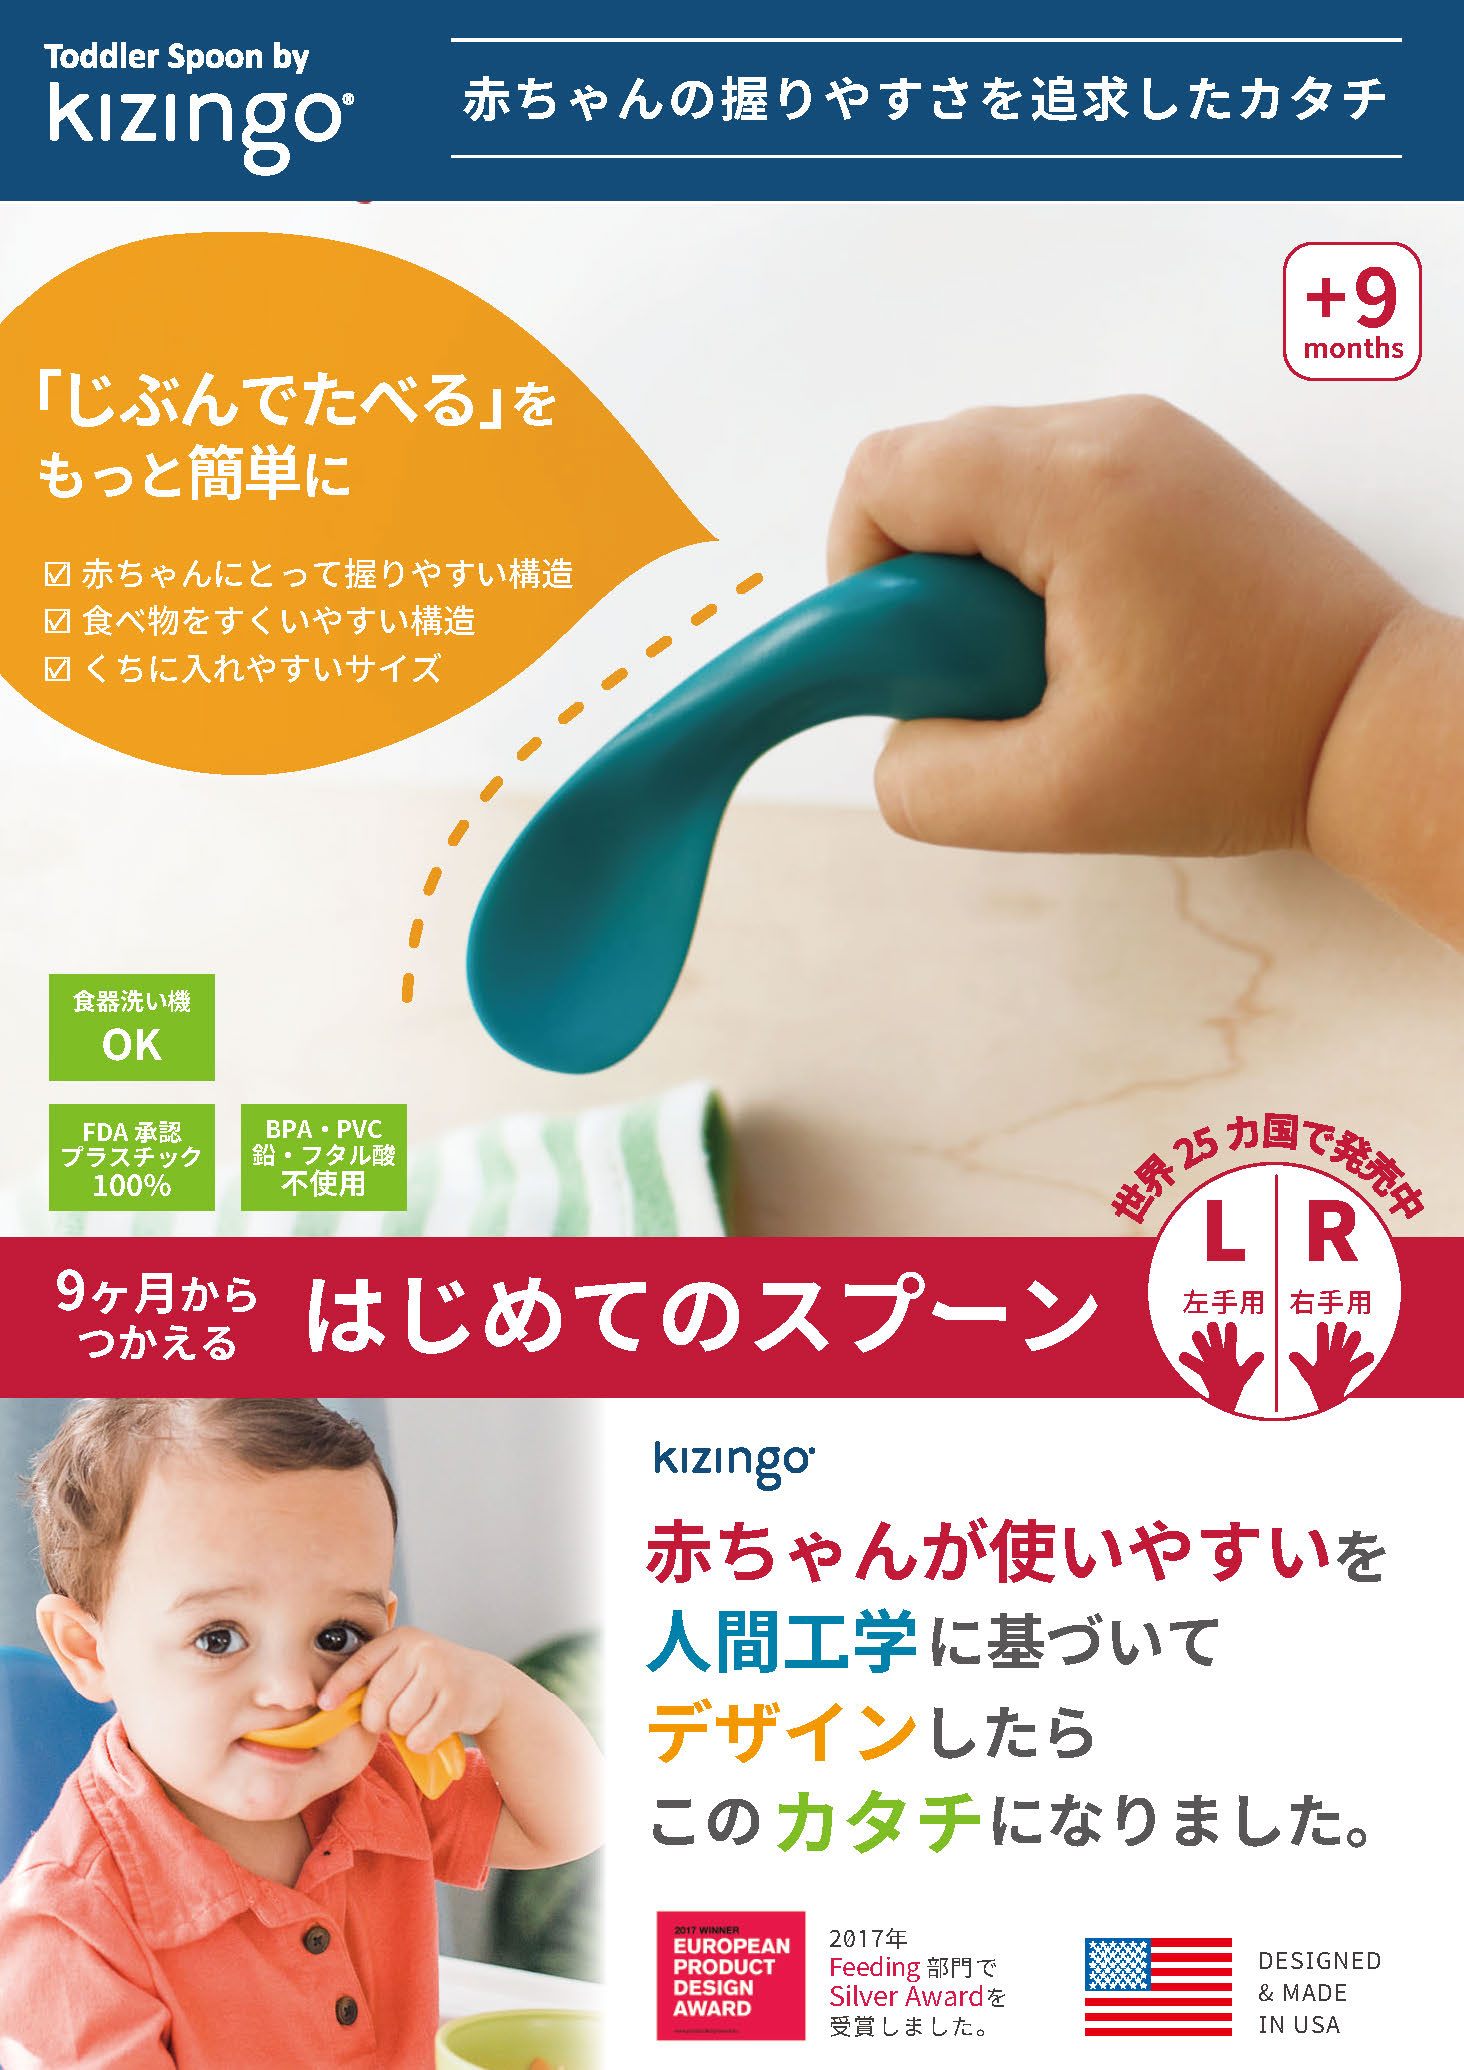 Toddler Spoon by kizingo（キジンゴ）。赤ちゃんの握りやすさを追求したカタチ。「じぶんでたべる」をもっと簡単に。赤ちゃんにとって握りやすい構造／食べ物をすくいやすい構造／くちに入れやすいサイズ。9ヶ月からつかえる、はじめてのスプーン。赤ちゃんが使いやすいを人間工学に基づいてデザインしたら、このカタチになりました。世界25ヶ国で発売中。